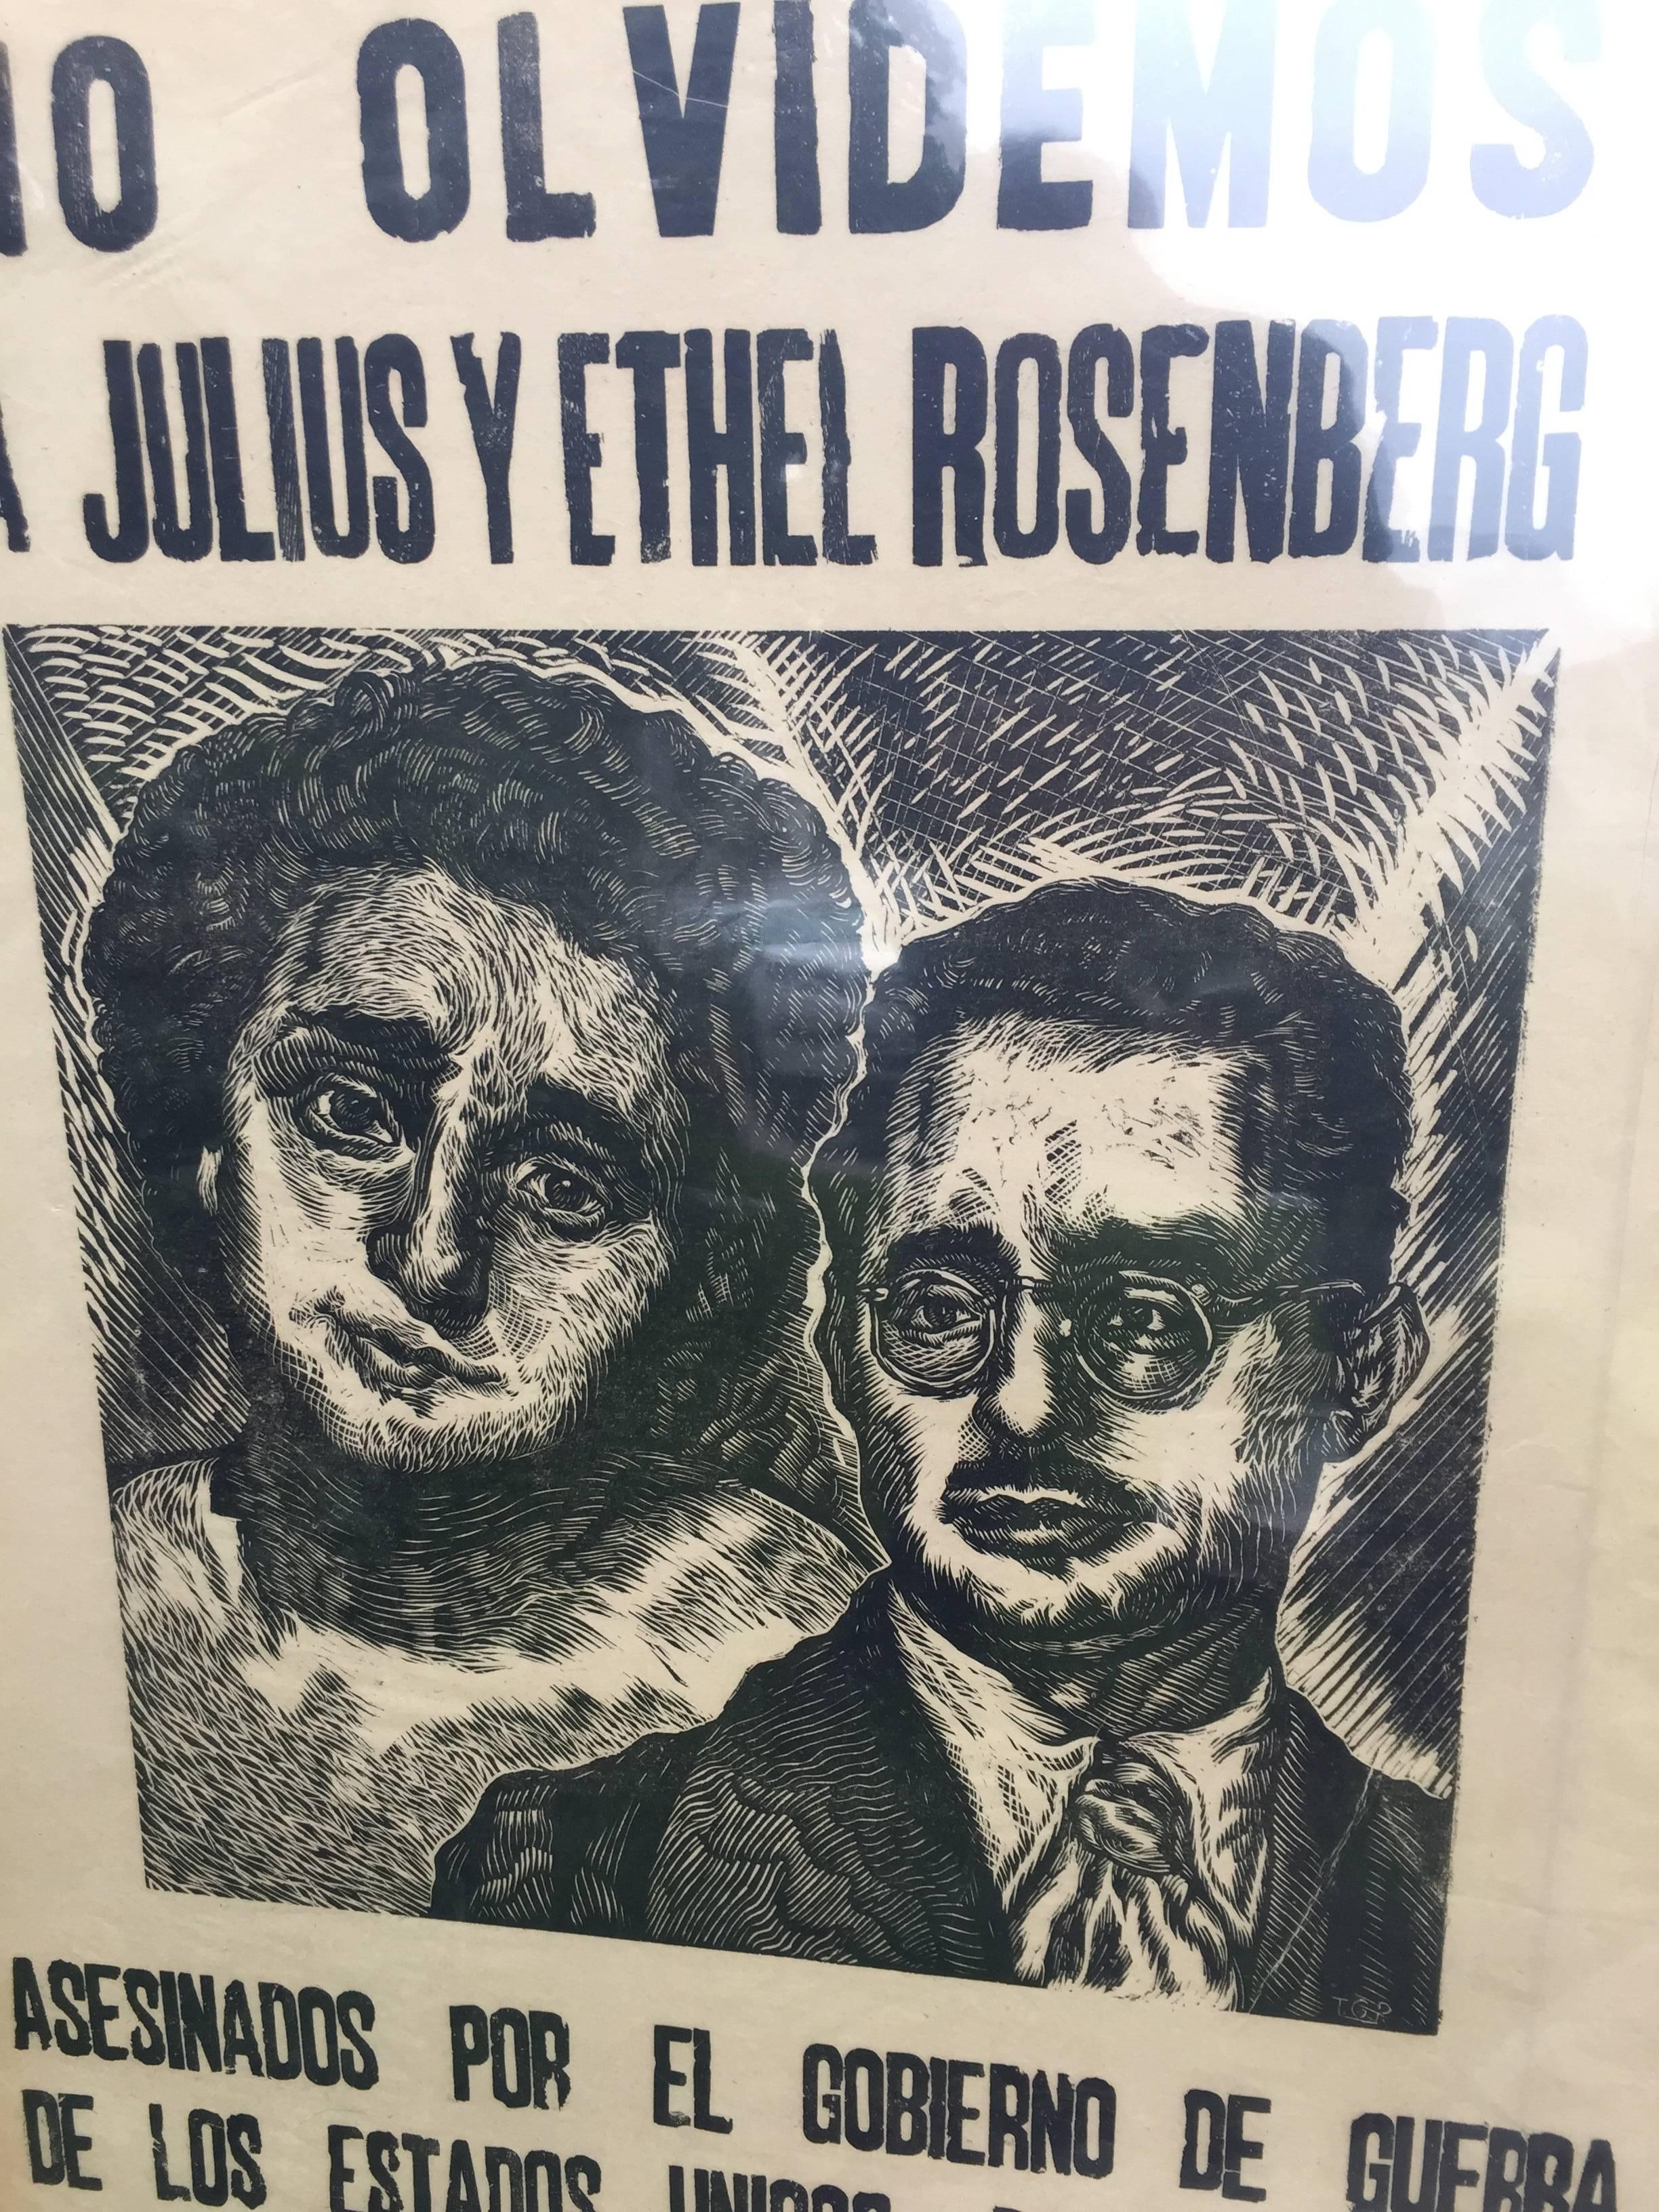 NO OLVIDEMOS A JULIUS Y ETHEL ROSENBERG - Print by Ángel Bracho